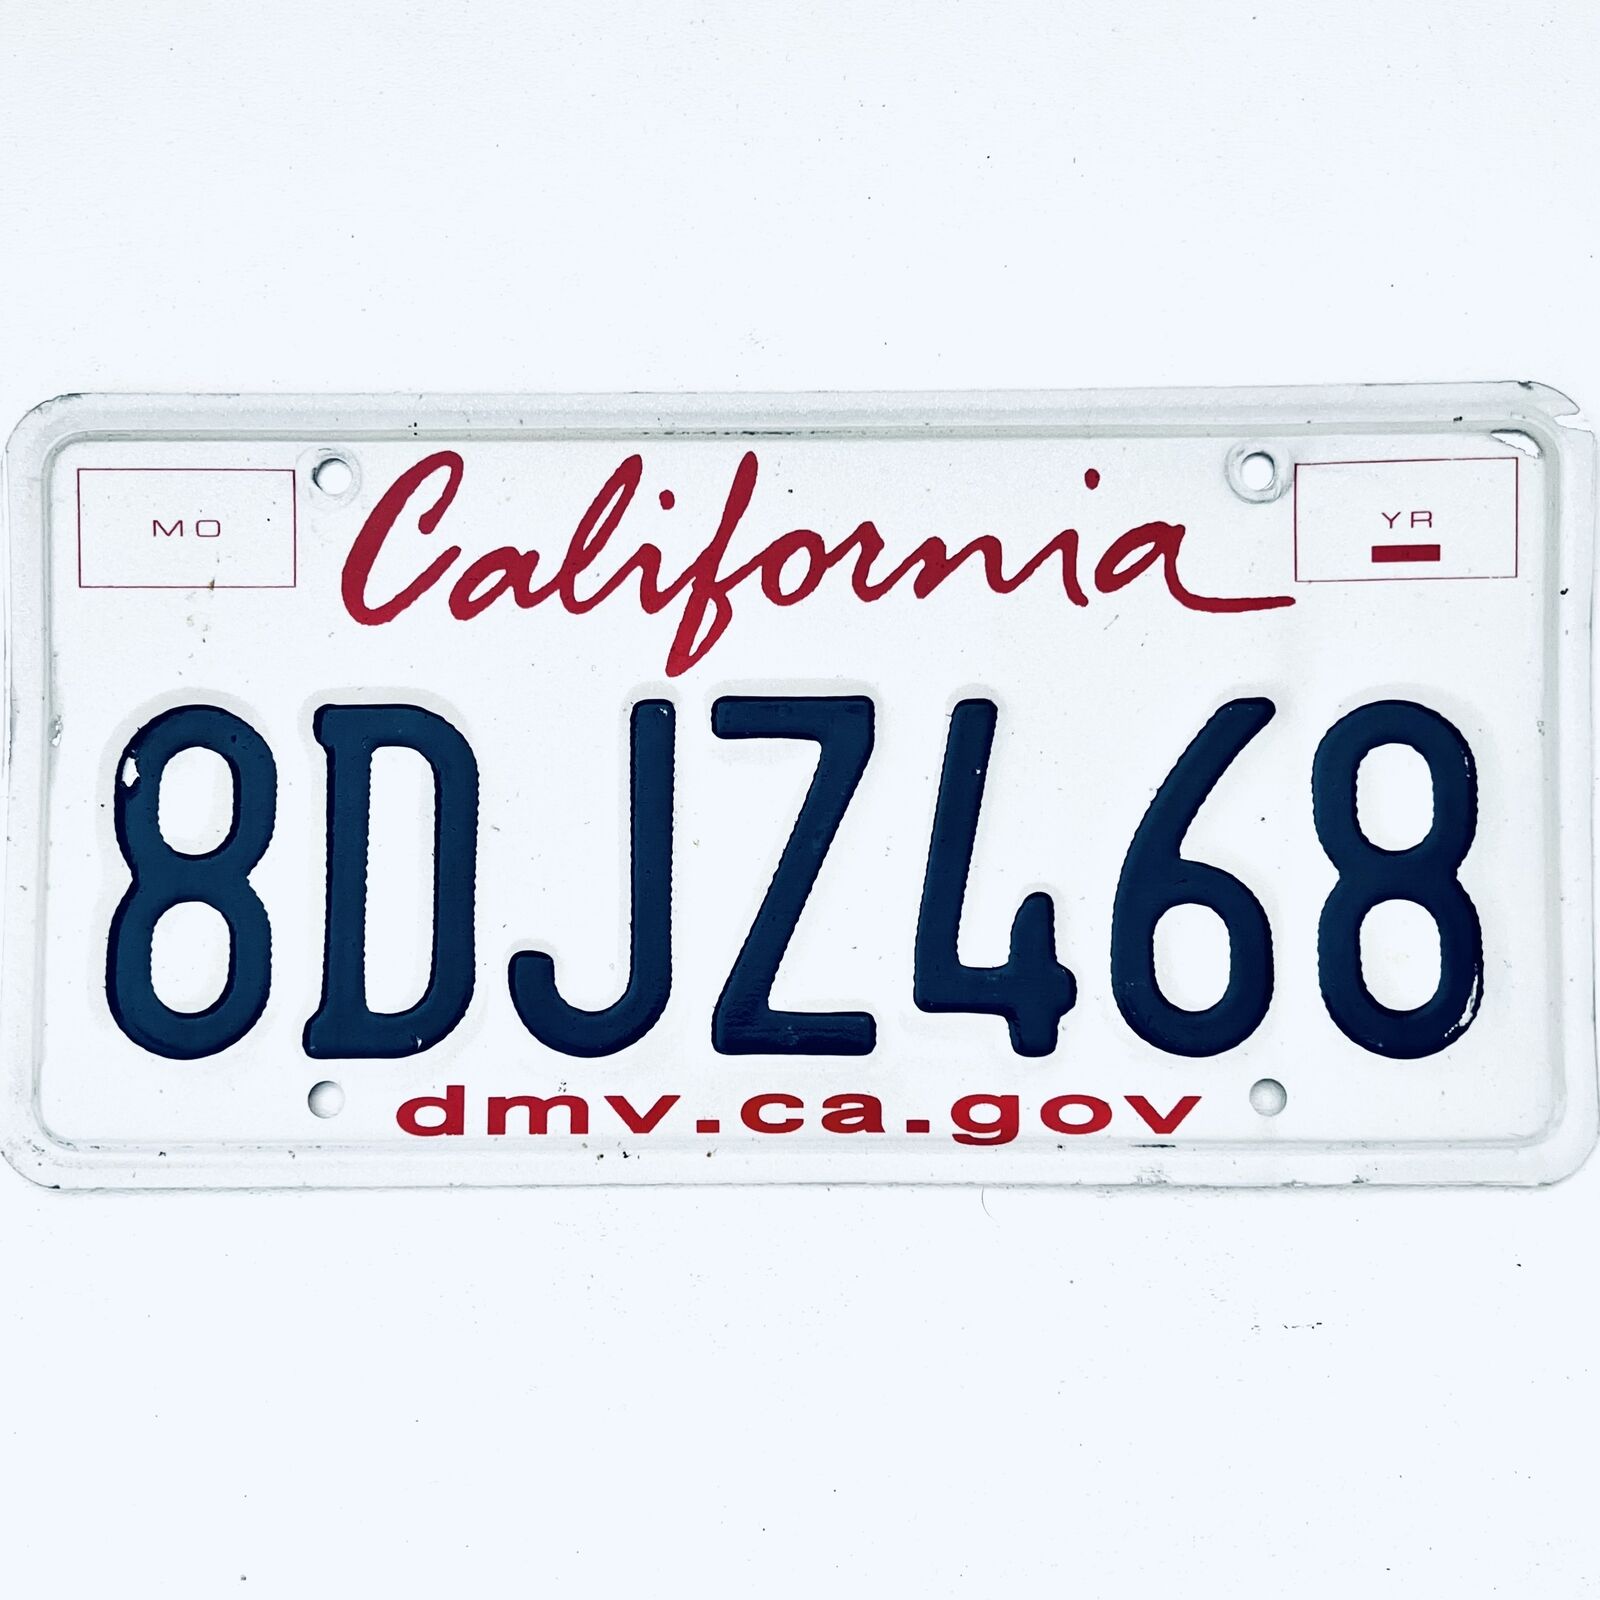  United States California Lipstick Passenger License Plate 8DJZ468